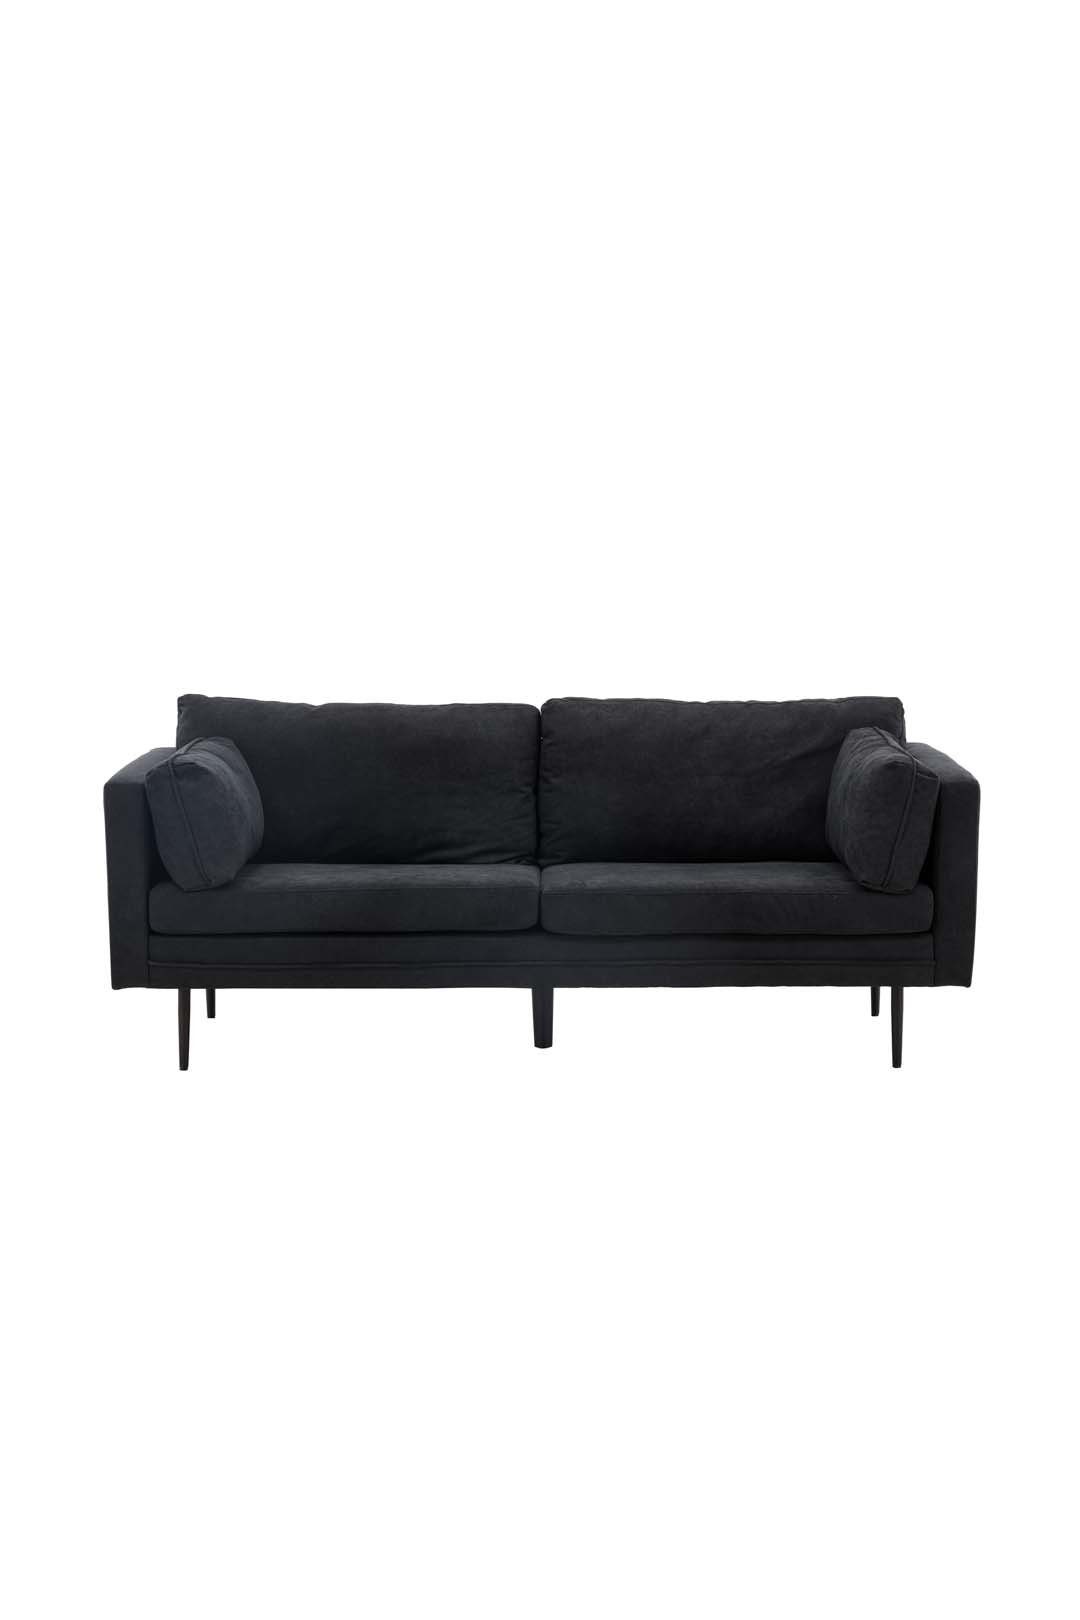 ebuy24 Sofa Boom Sofa 3 Personen schwarz.